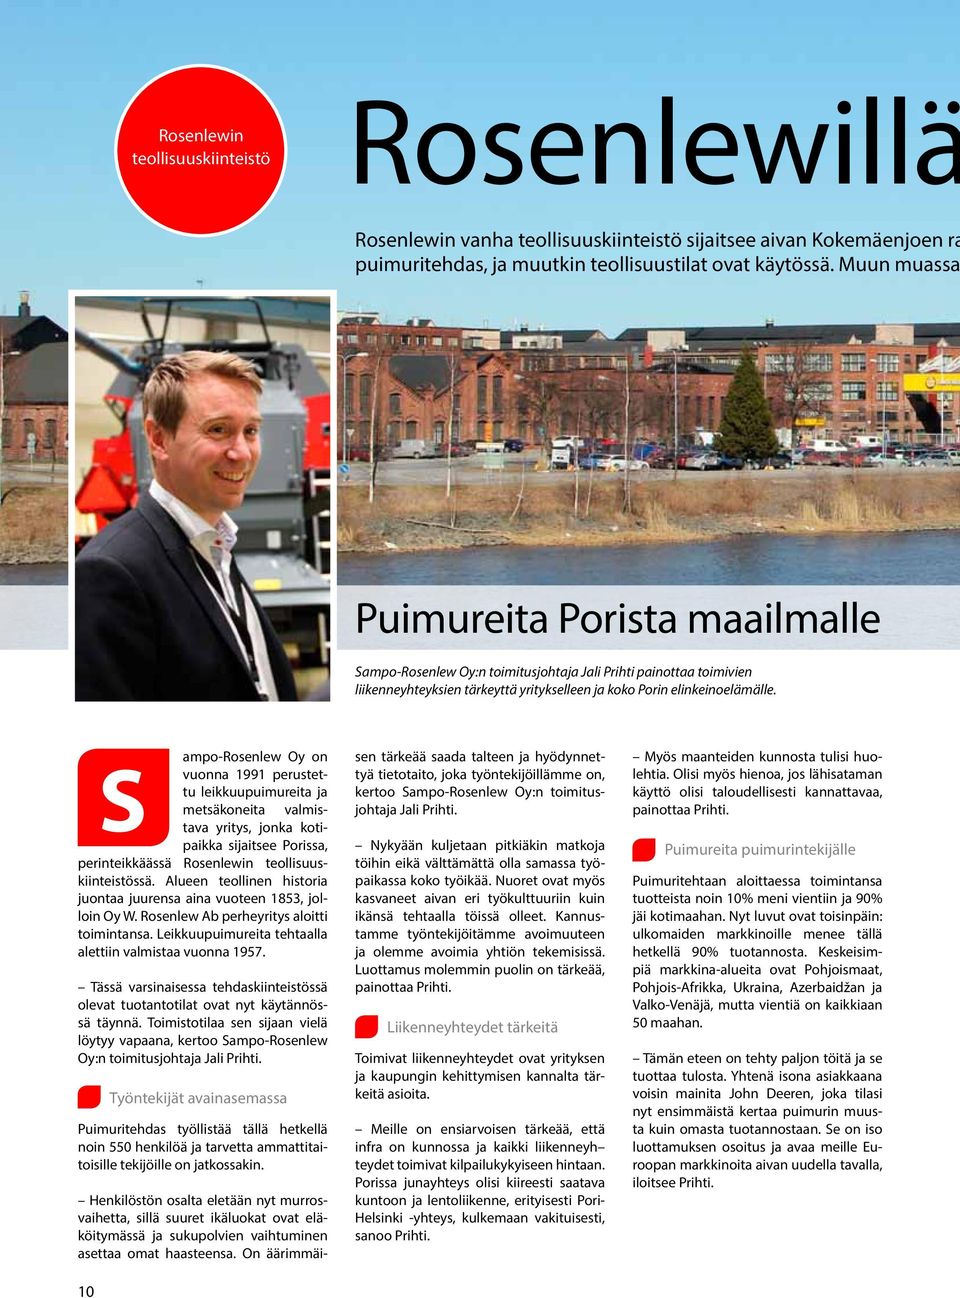 ampo-rosenlew Oy on S vuonna 1991 perustettu leikkuupuimureita ja metsäkoneita valmistava yritys, jonka kotipaikka sijaitsee Porissa, perinteikkäässä Rosenlewin teollisuuskiinteistössä.